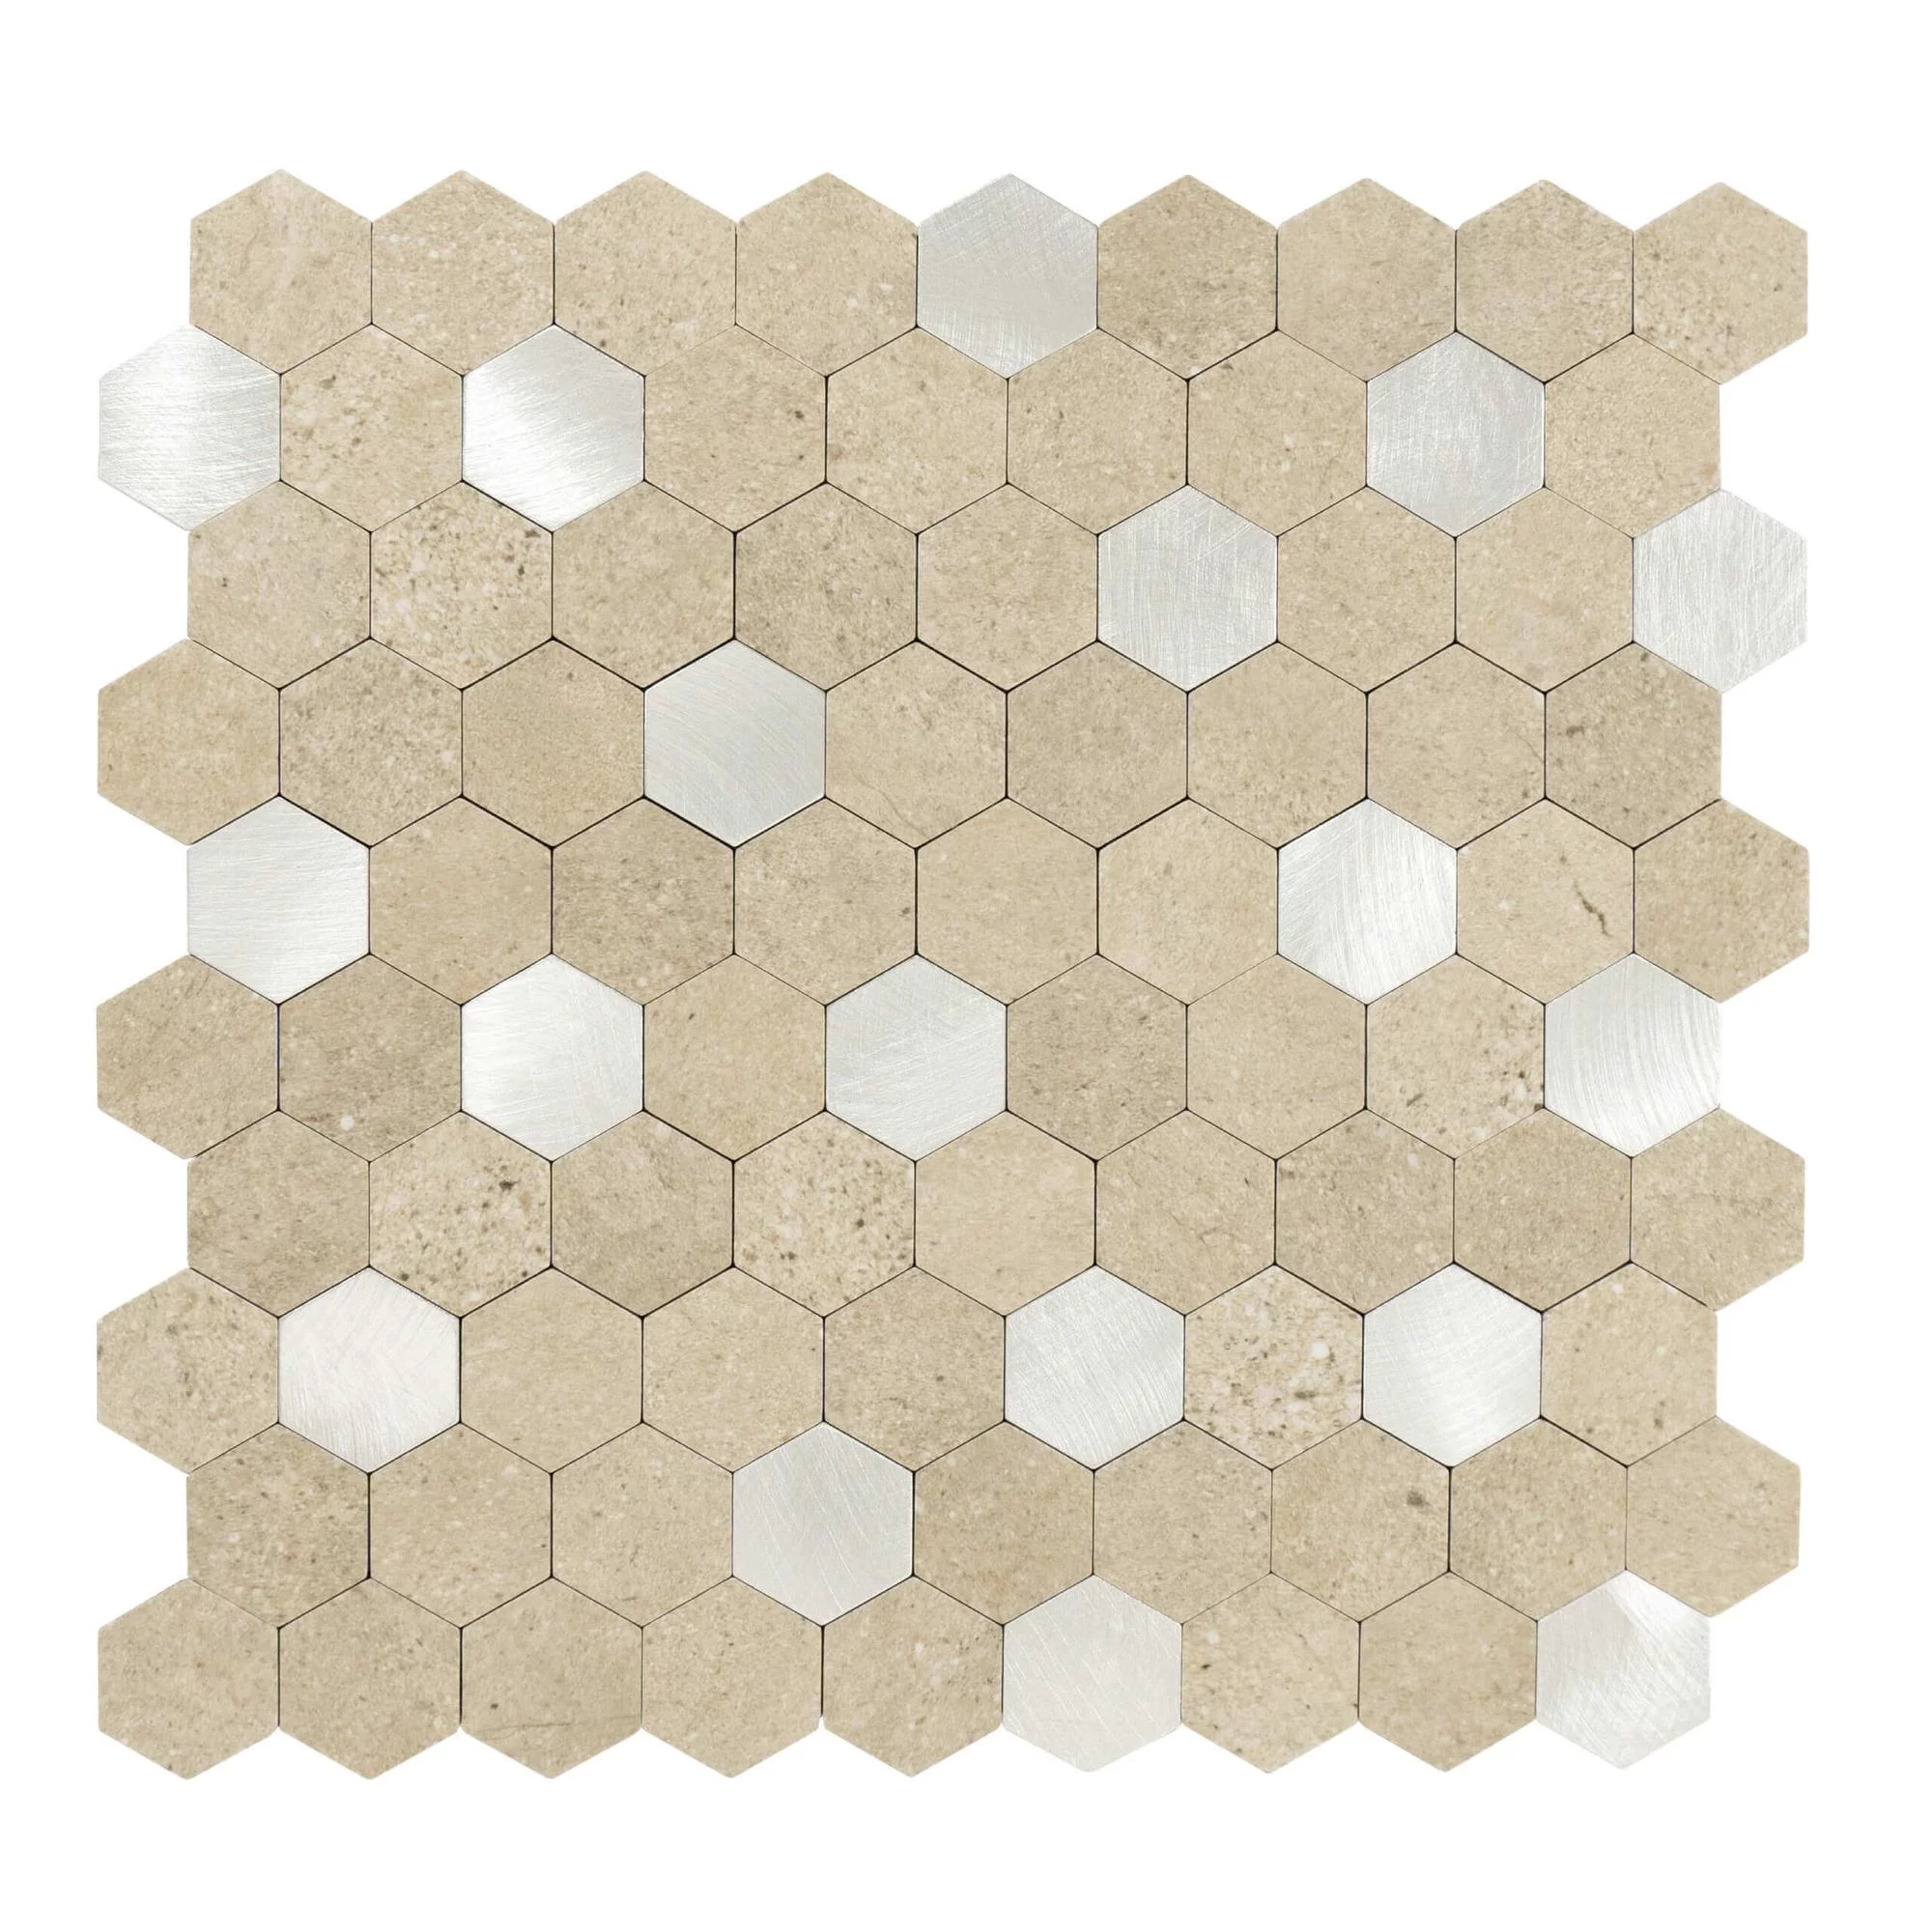 carreaux-autocollants-forme-hexagonale-0.88m².-11-pcs-aspect-pierre-sable-argent